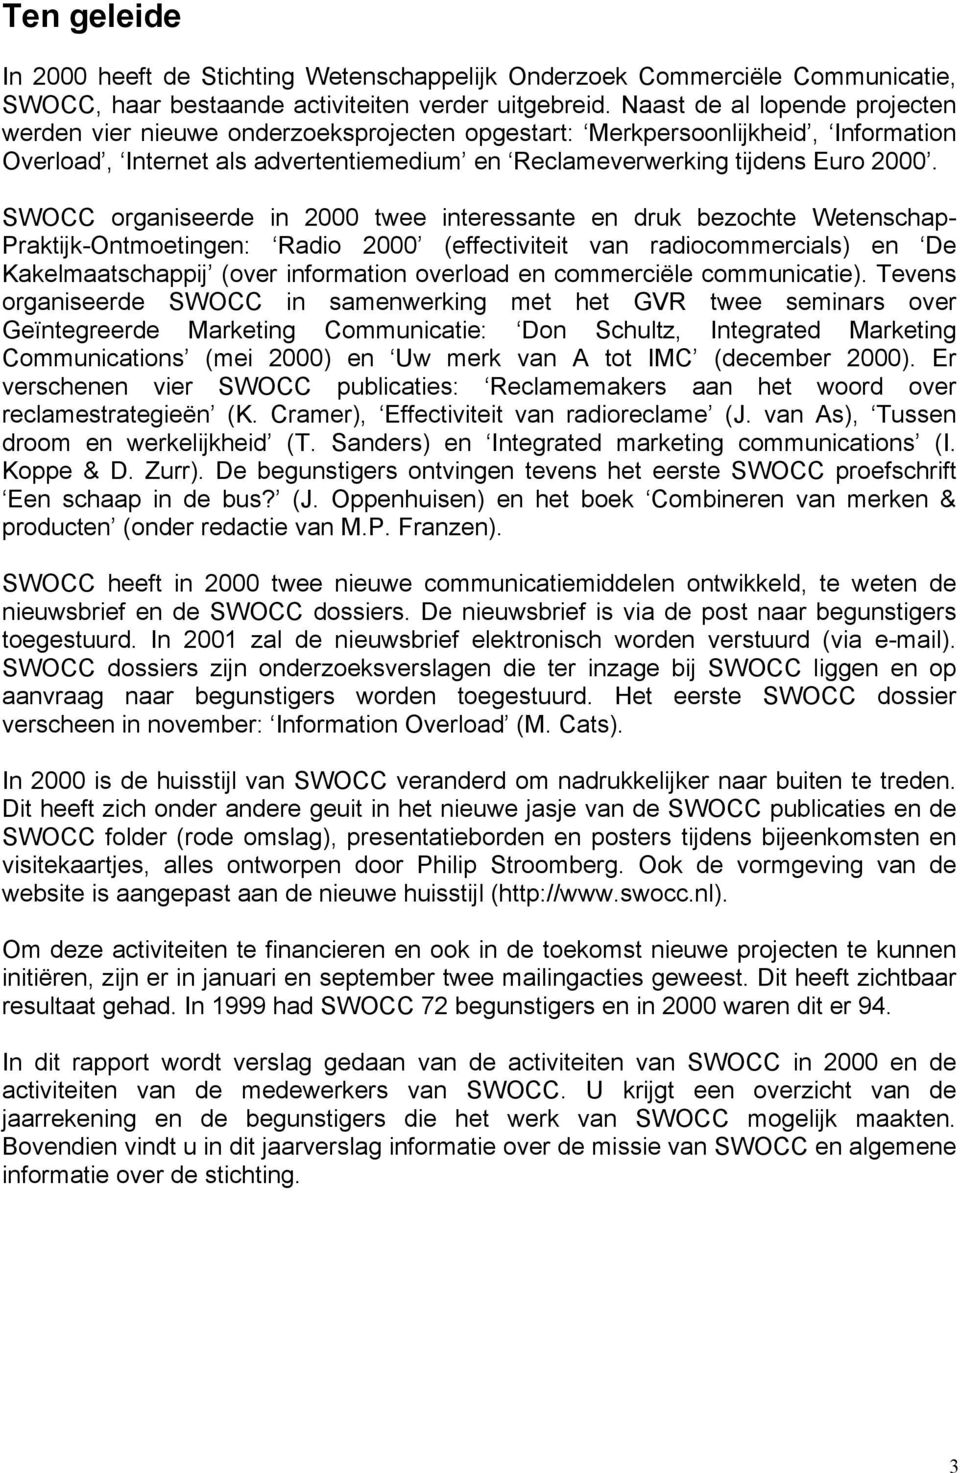 SWOCC organiseerde in 2000 twee interessante en druk bezochte Wetenschap- Praktijk-Ontmoetingen: Radio 2000 (effectiviteit van radiocommercials) en De Kakelmaatschappij (over information overload en